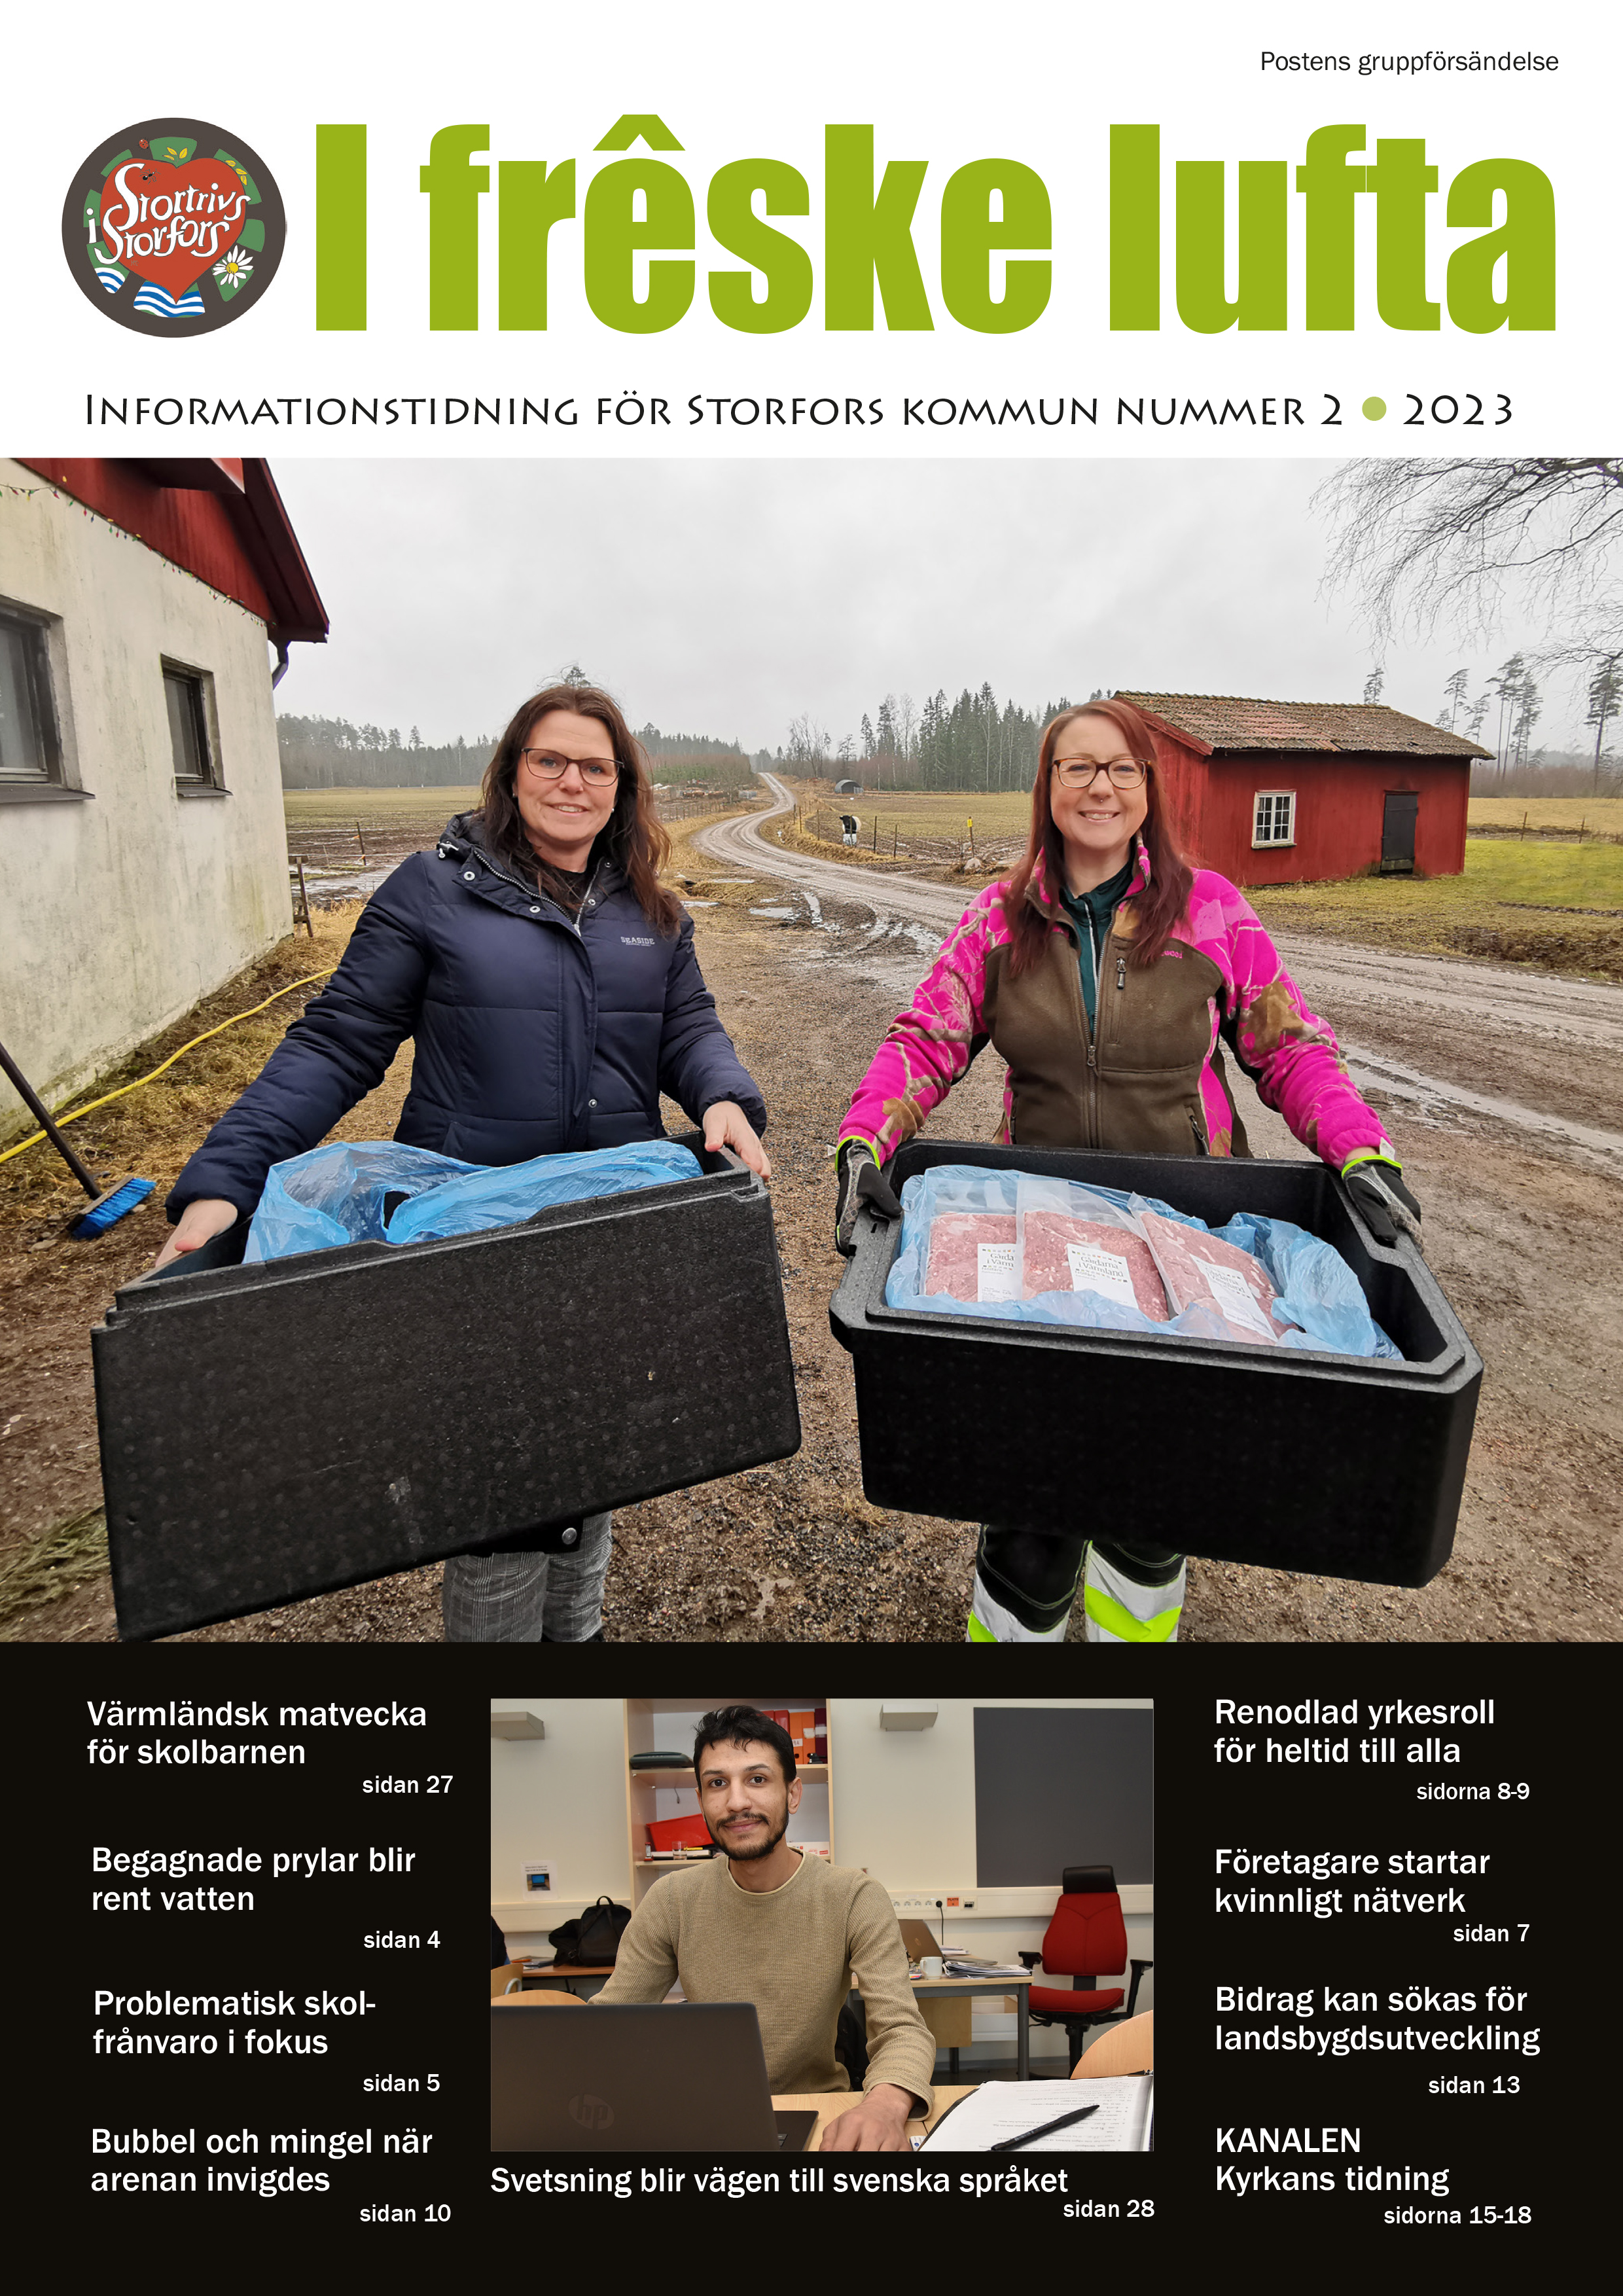 Framsidan på senaste I frêske lufta, kommunens informationstidning visar två kvinnor som håller i lådor med mat